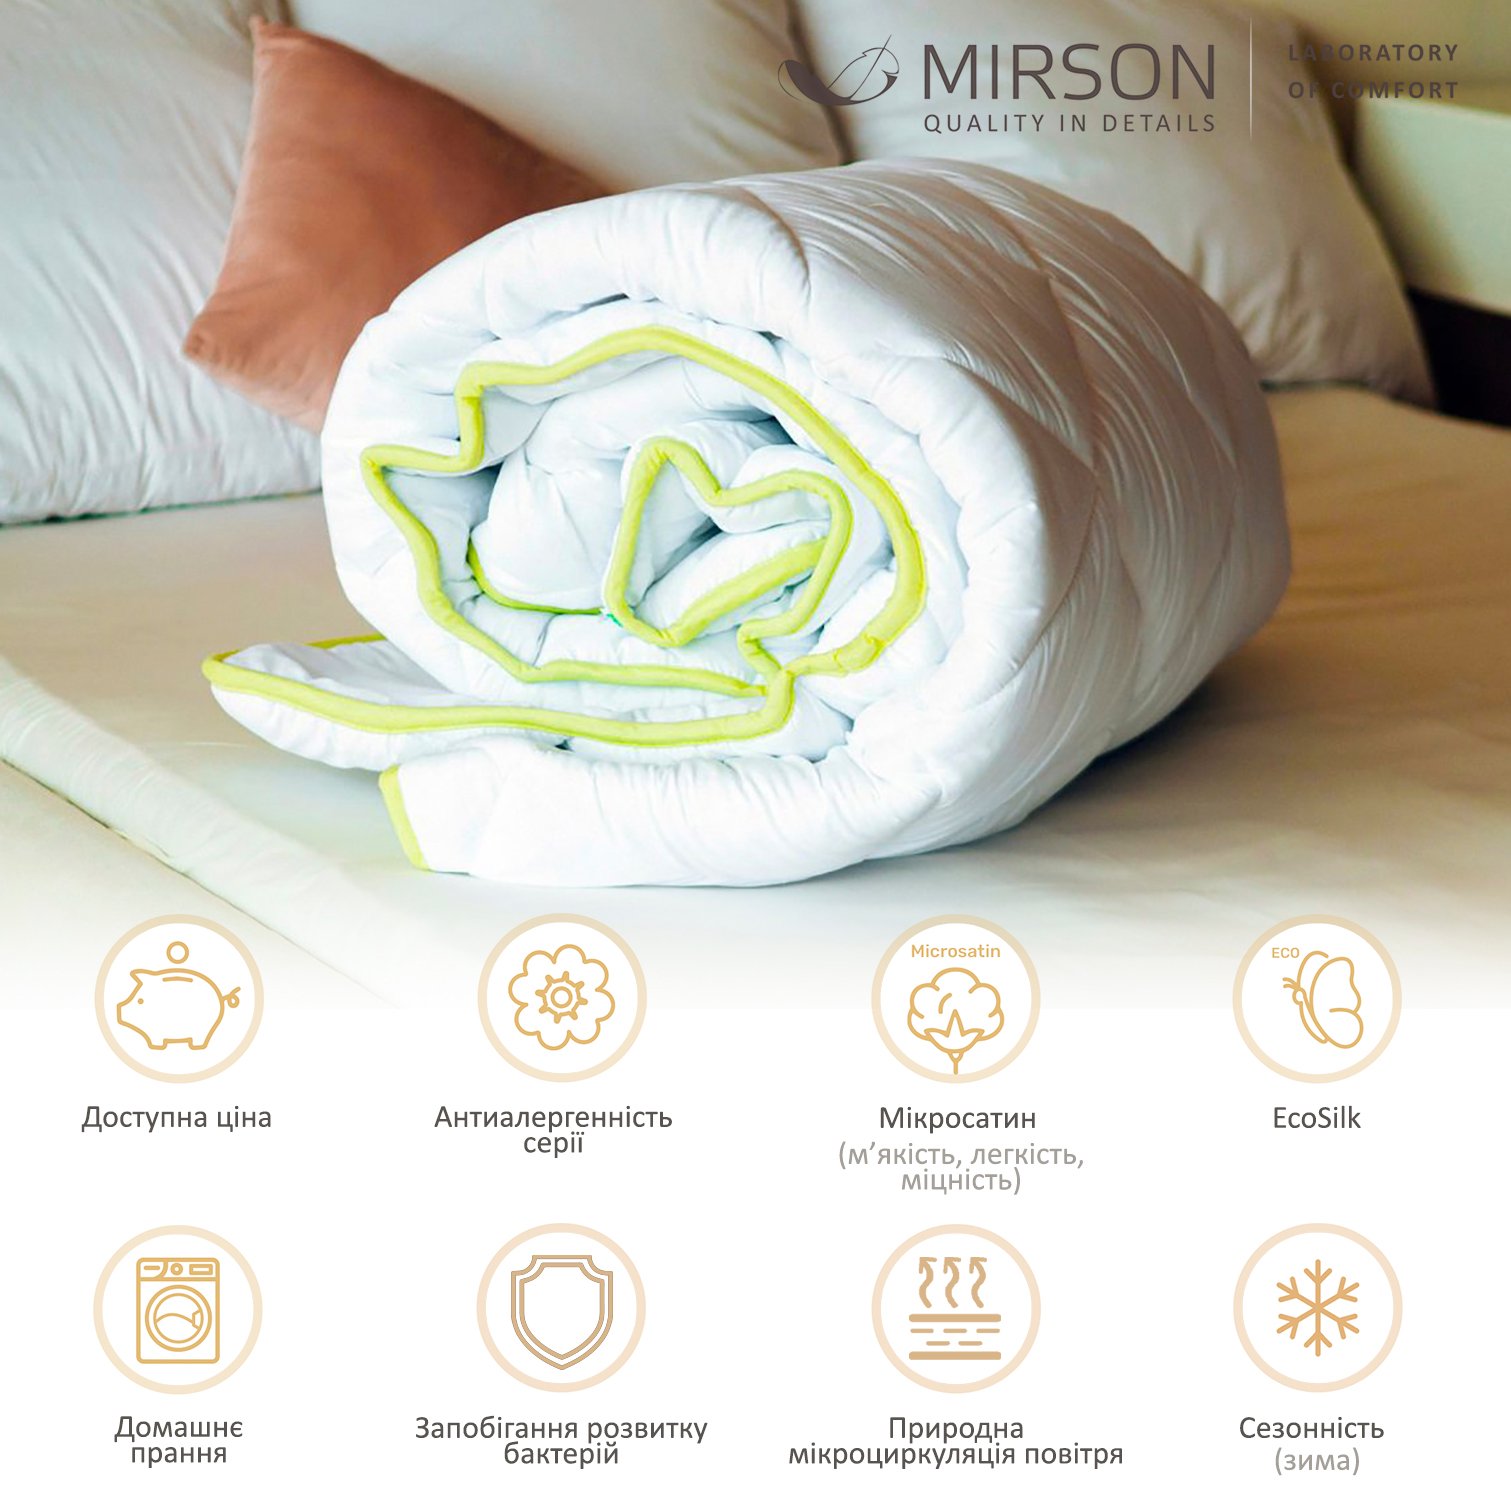 Одеяло антиаллергенное MirSon EcoSilk №003, зимнее, 200x220 см, белое (8062582) - фото 4